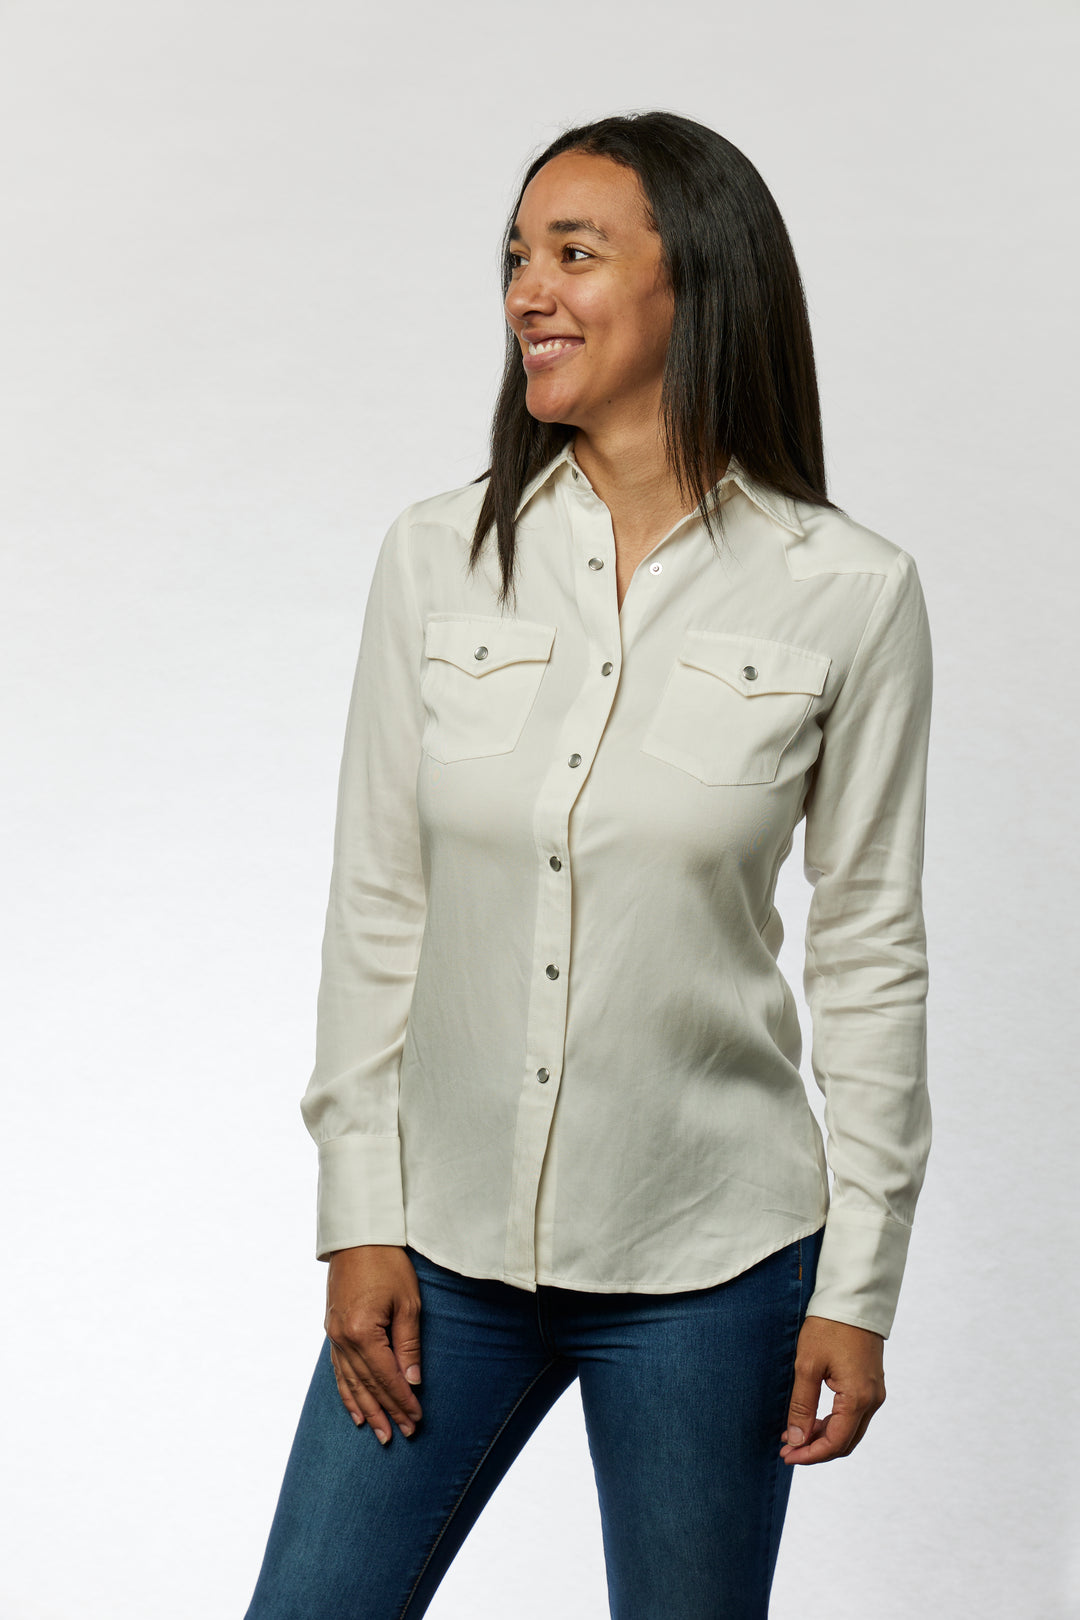 Denver Women's Shirt White